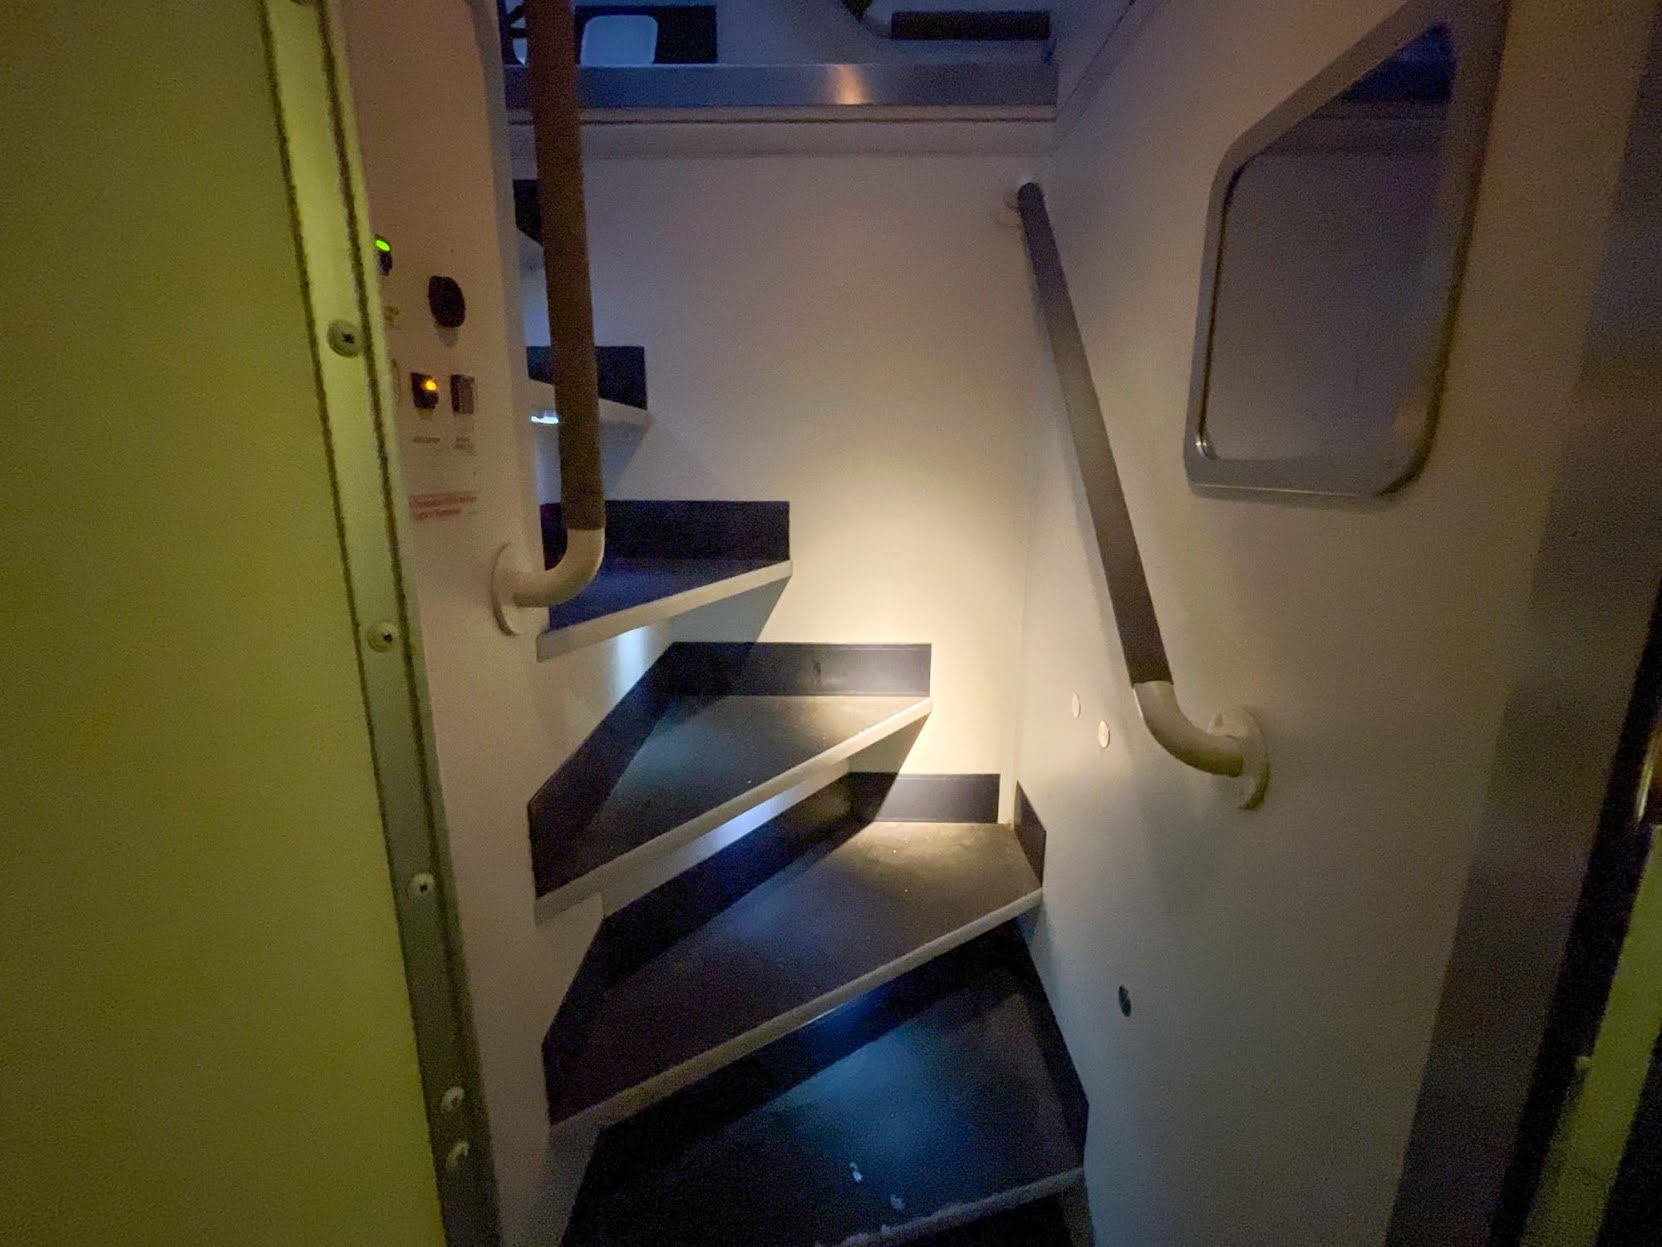 Khám phá chỗ ngủ của phi công và tiếp viên hàng không trên máy bay - Ảnh 4.